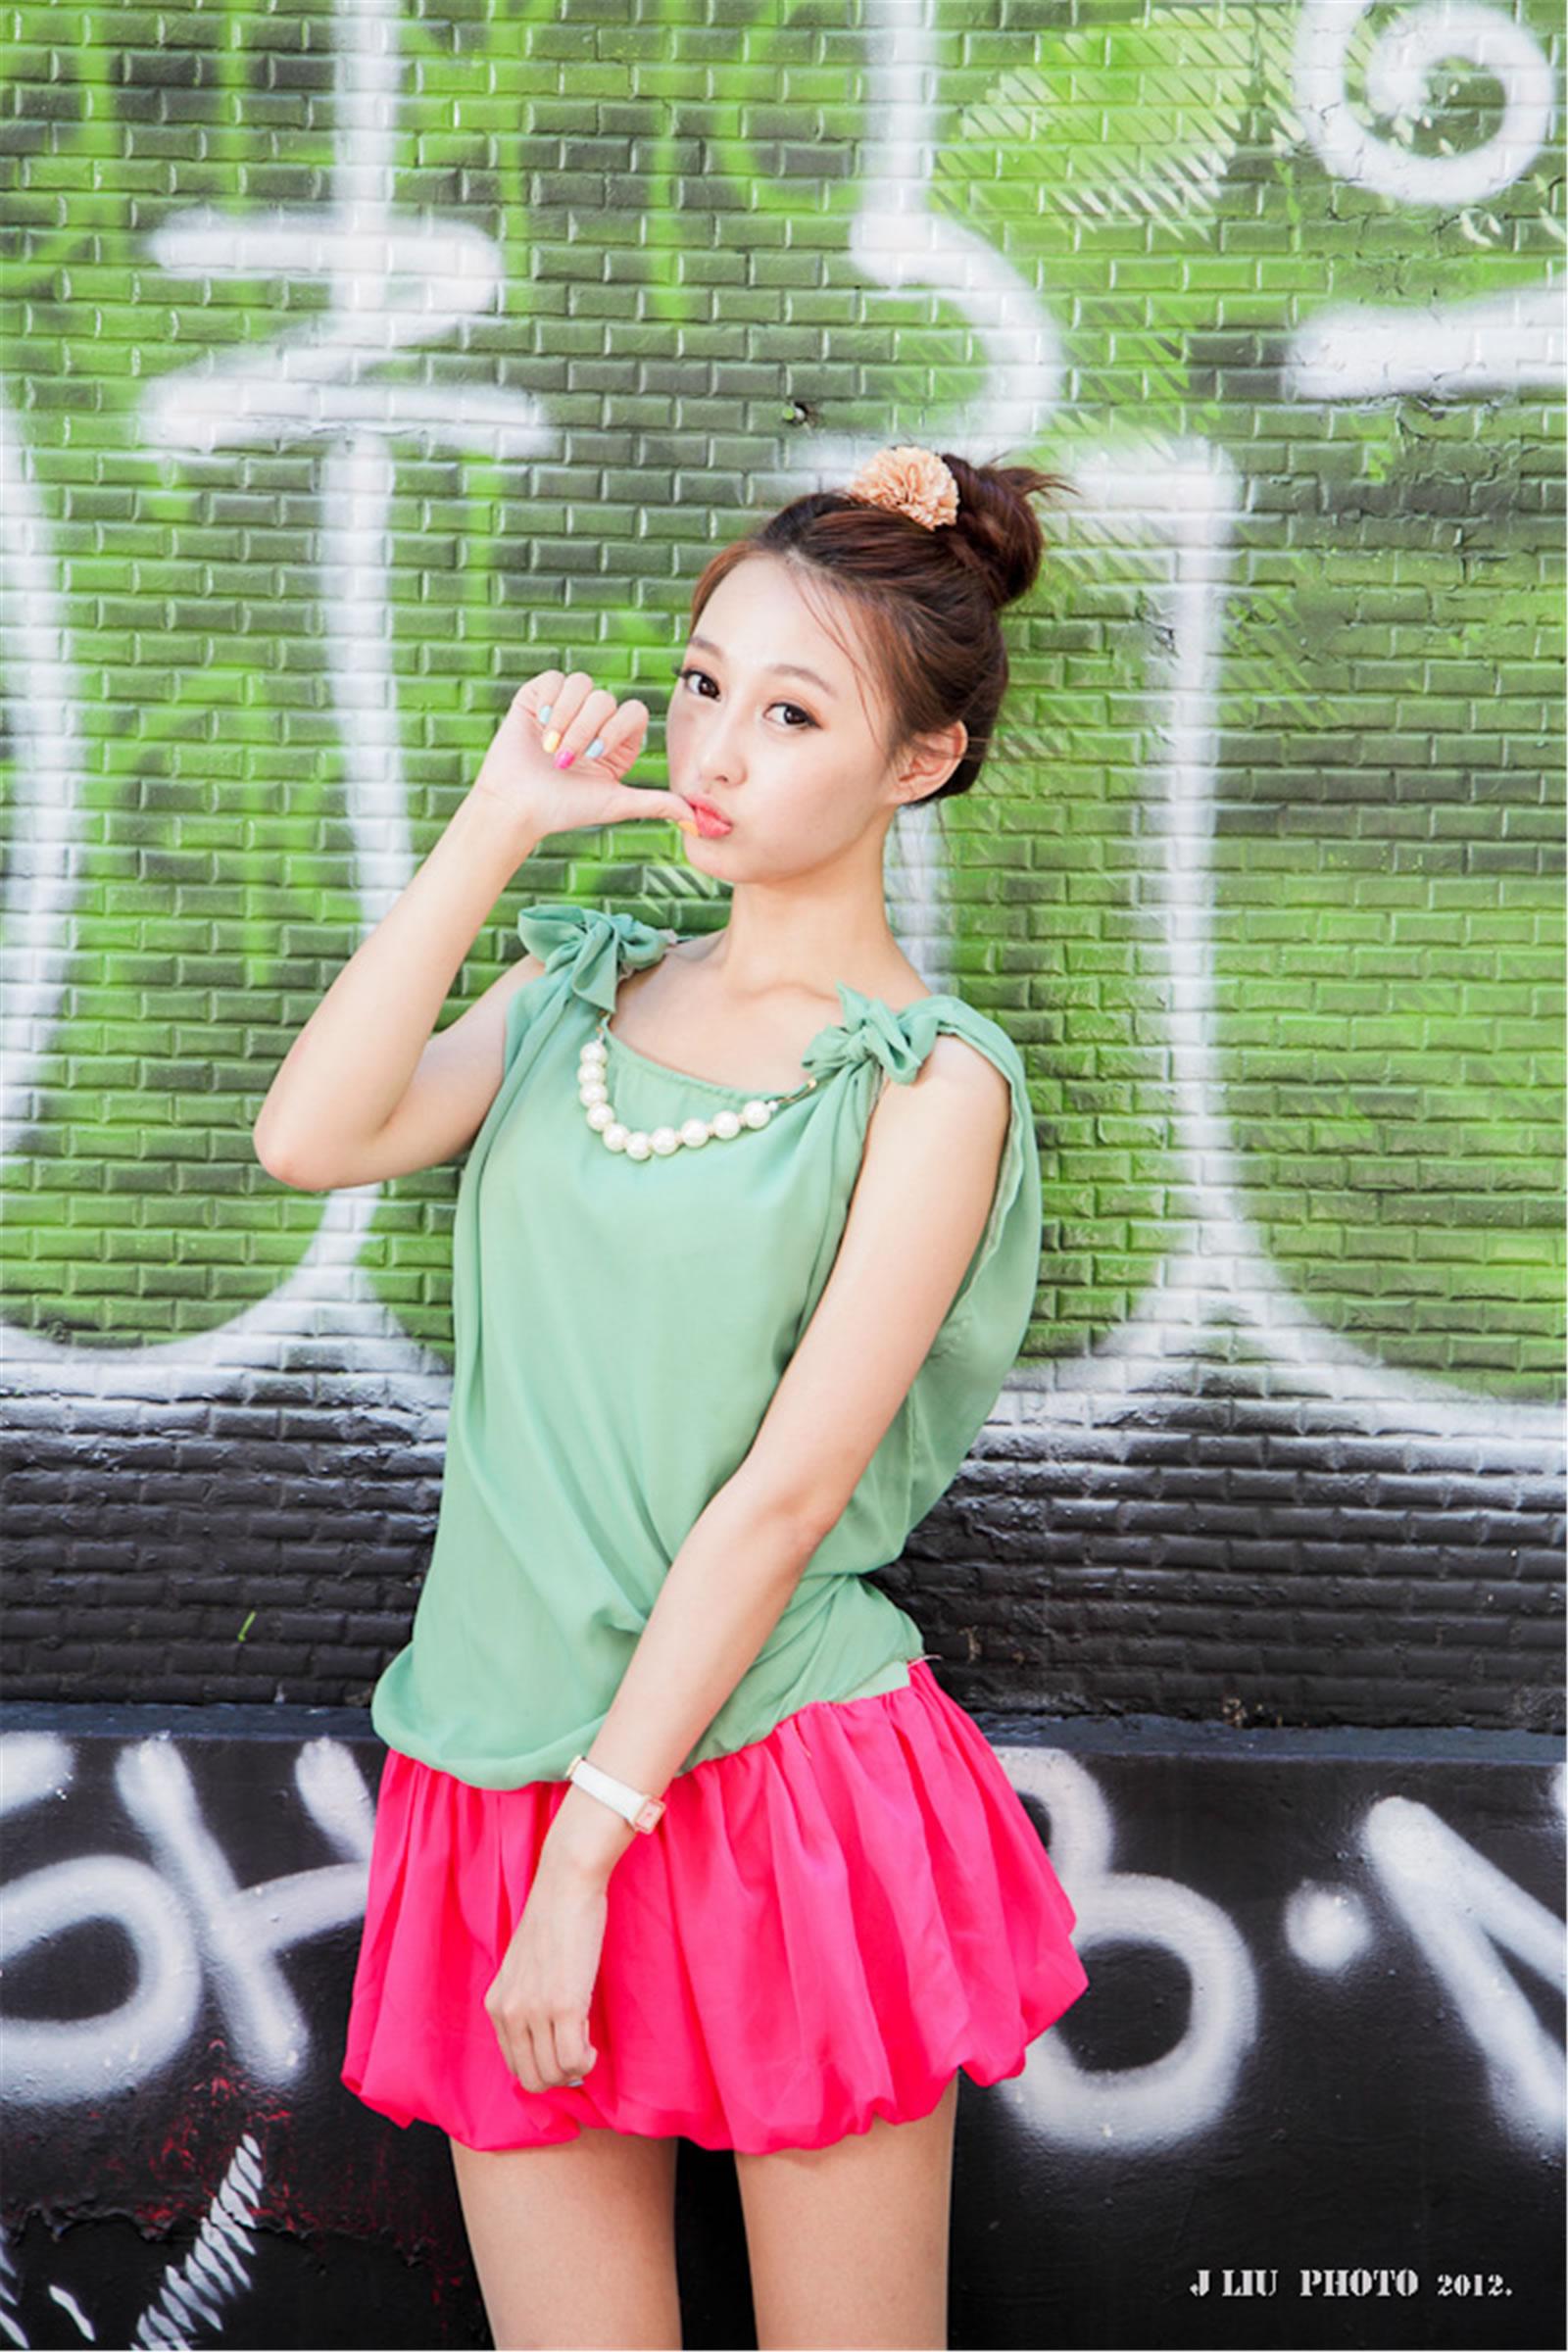 台湾清纯美女Barbie淡绿色无袖衫红色蓬蓬裙-西門街拍写真,台湾清纯美女Barbie淡绿色无袖衫红色蓬蓬裙-西門街拍写真